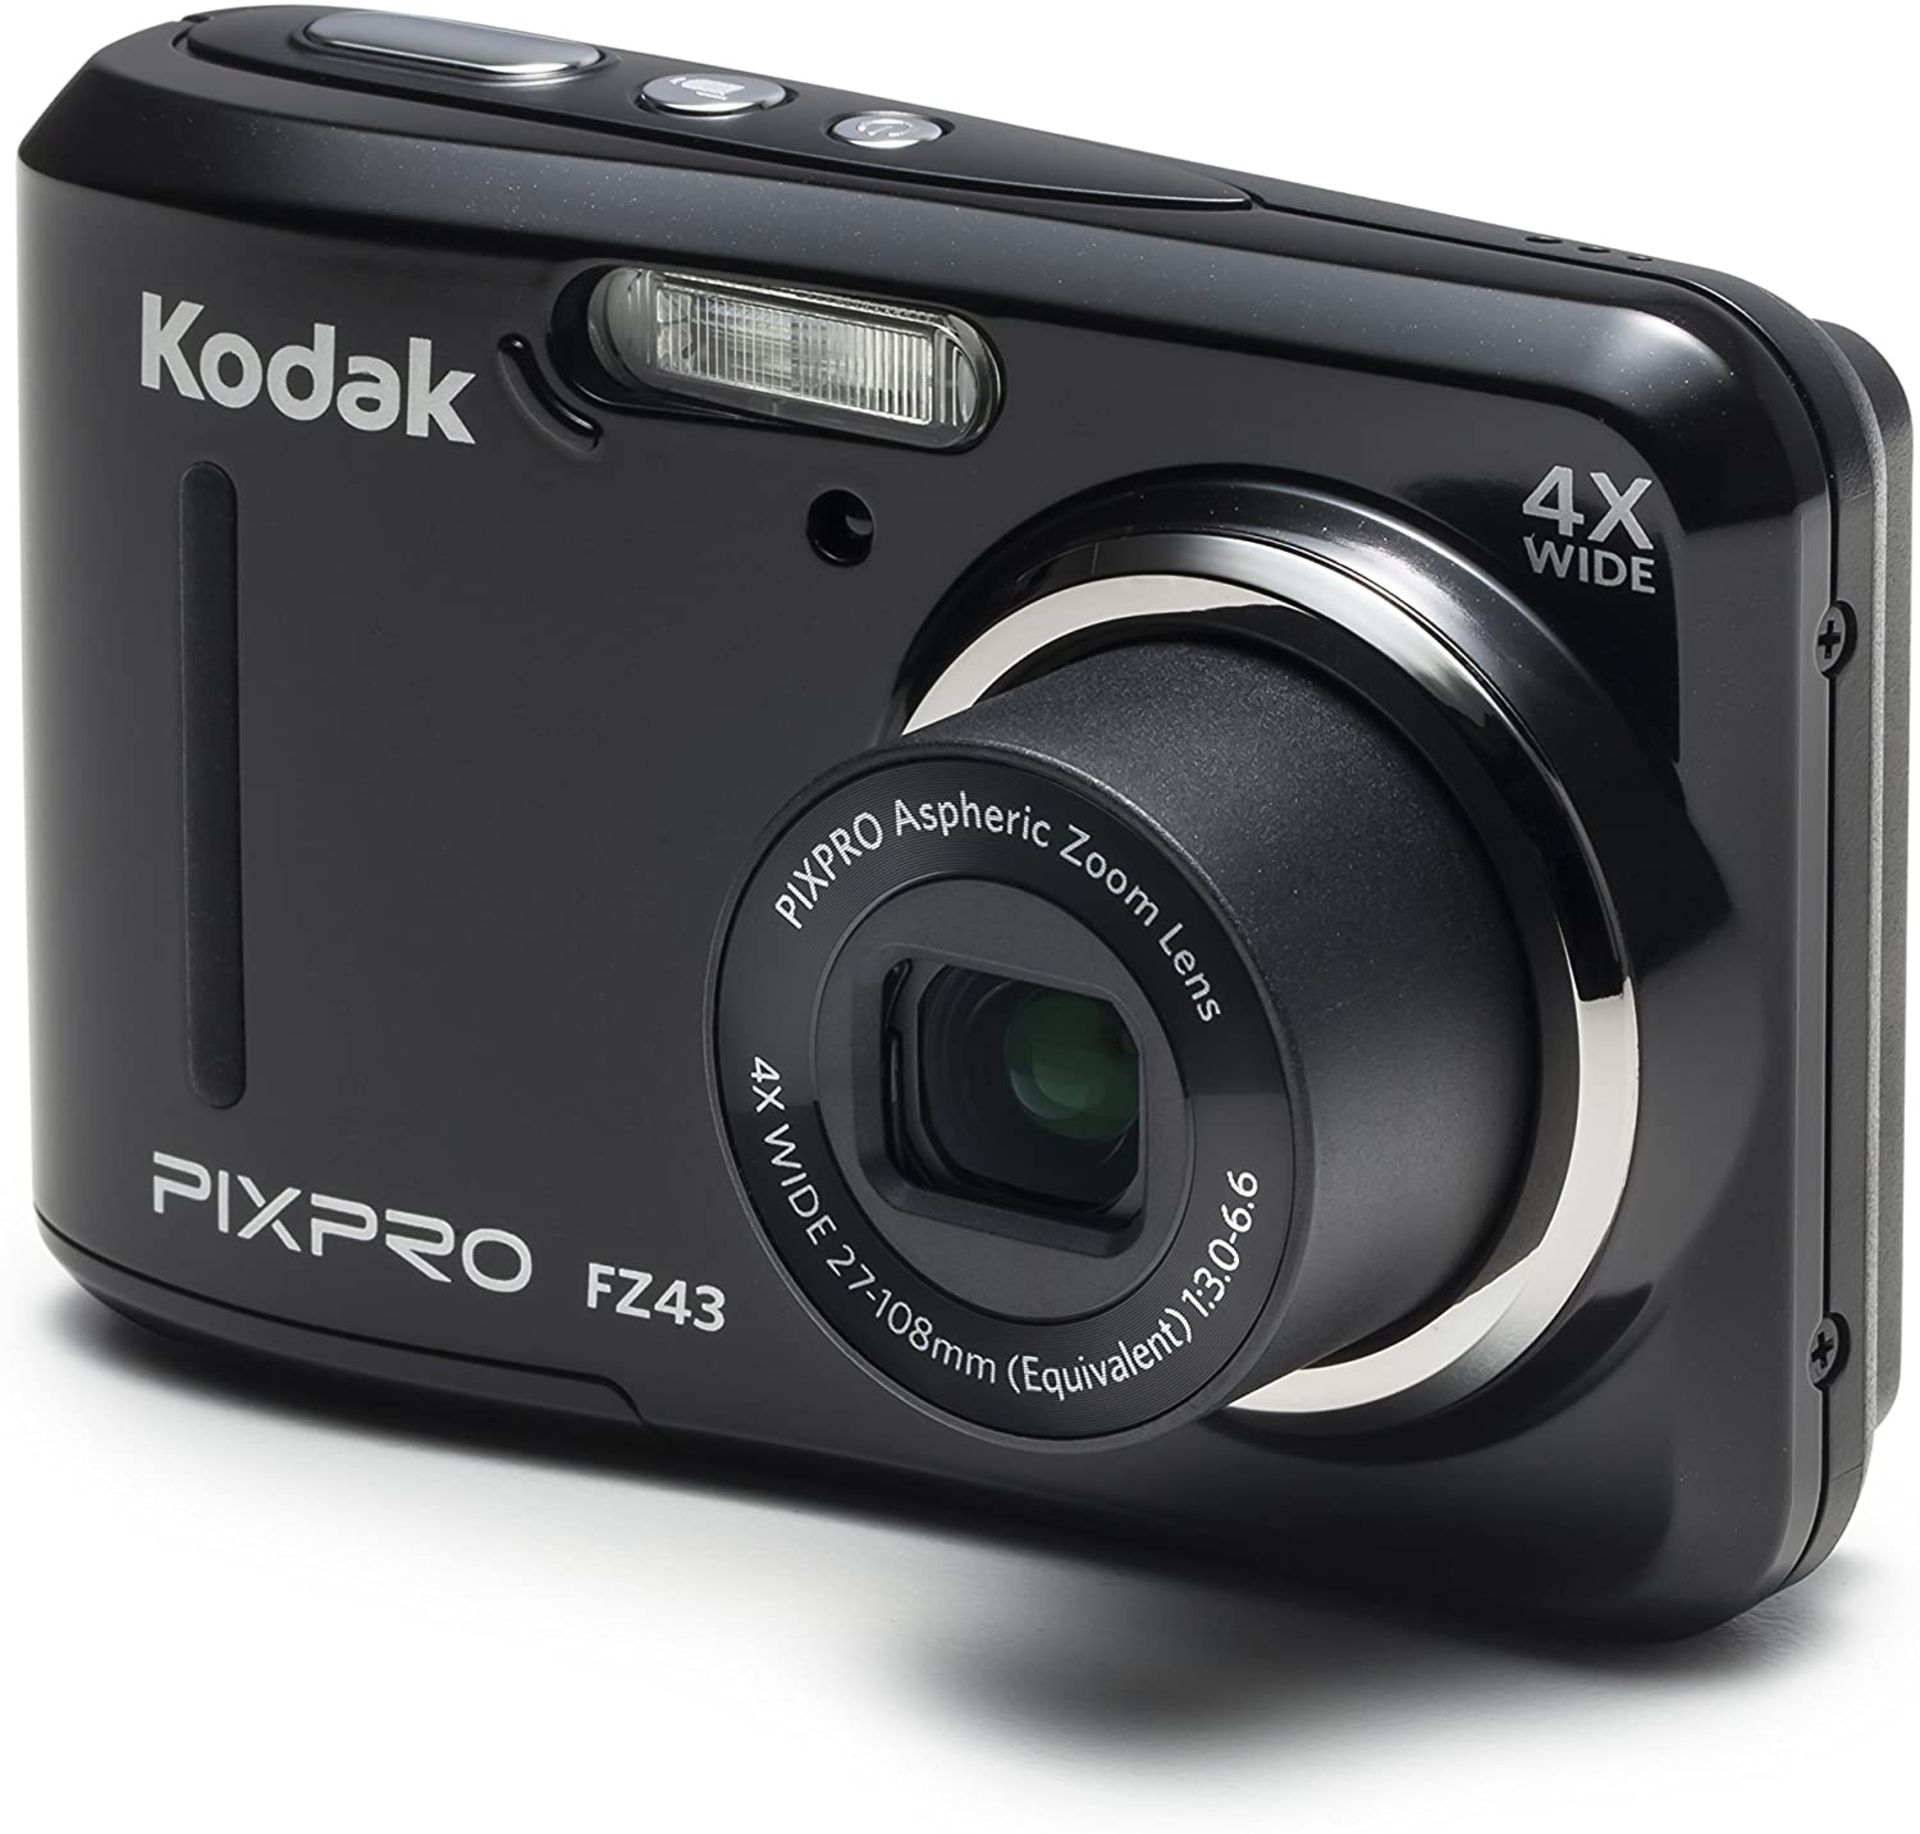 (41) 1 x Grade B - KODAK FZ43 Digital Still Camera - Black (27 mm Lens, 4x Zoom, 16 MP) 2.7-Inc... - Image 3 of 4